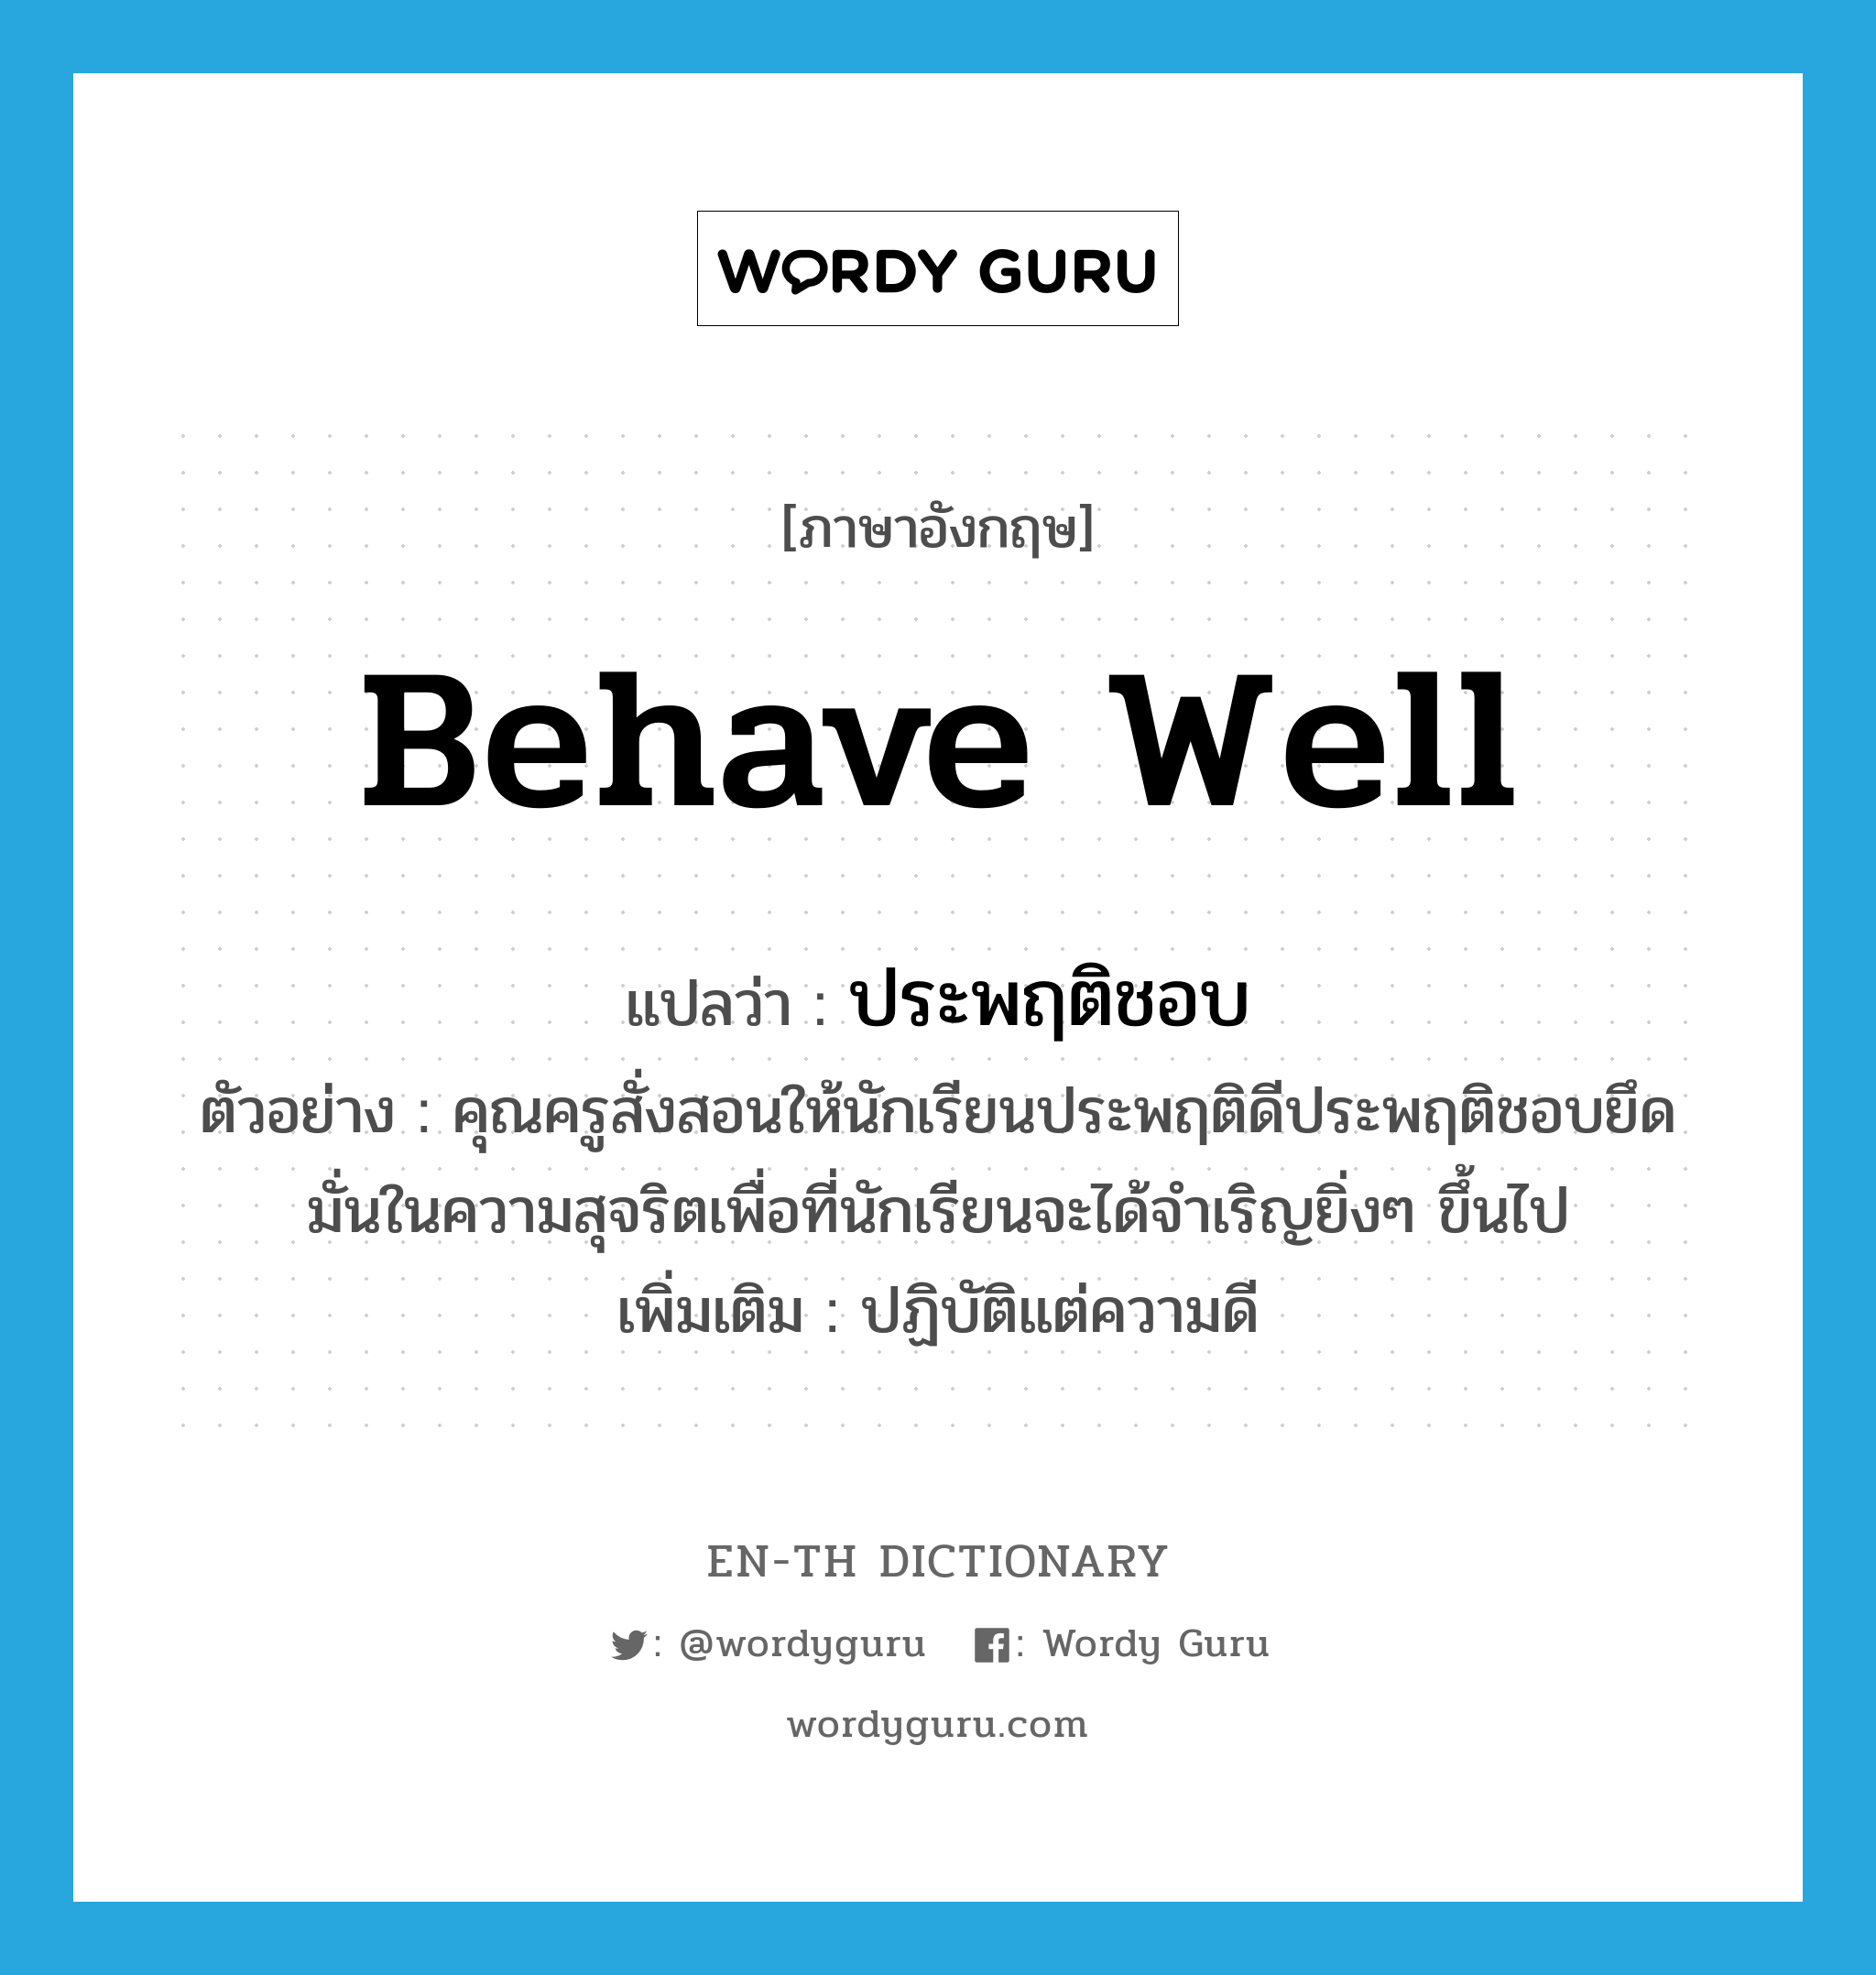 behave well แปลว่า?, คำศัพท์ภาษาอังกฤษ behave well แปลว่า ประพฤติชอบ ประเภท V ตัวอย่าง คุณครูสั่งสอนให้นักเรียนประพฤติดีประพฤติชอบยึดมั่นในความสุจริตเพื่อที่นักเรียนจะได้จำเริญยิ่งๆ ขึ้นไป เพิ่มเติม ปฏิบัติแต่ความดี หมวด V